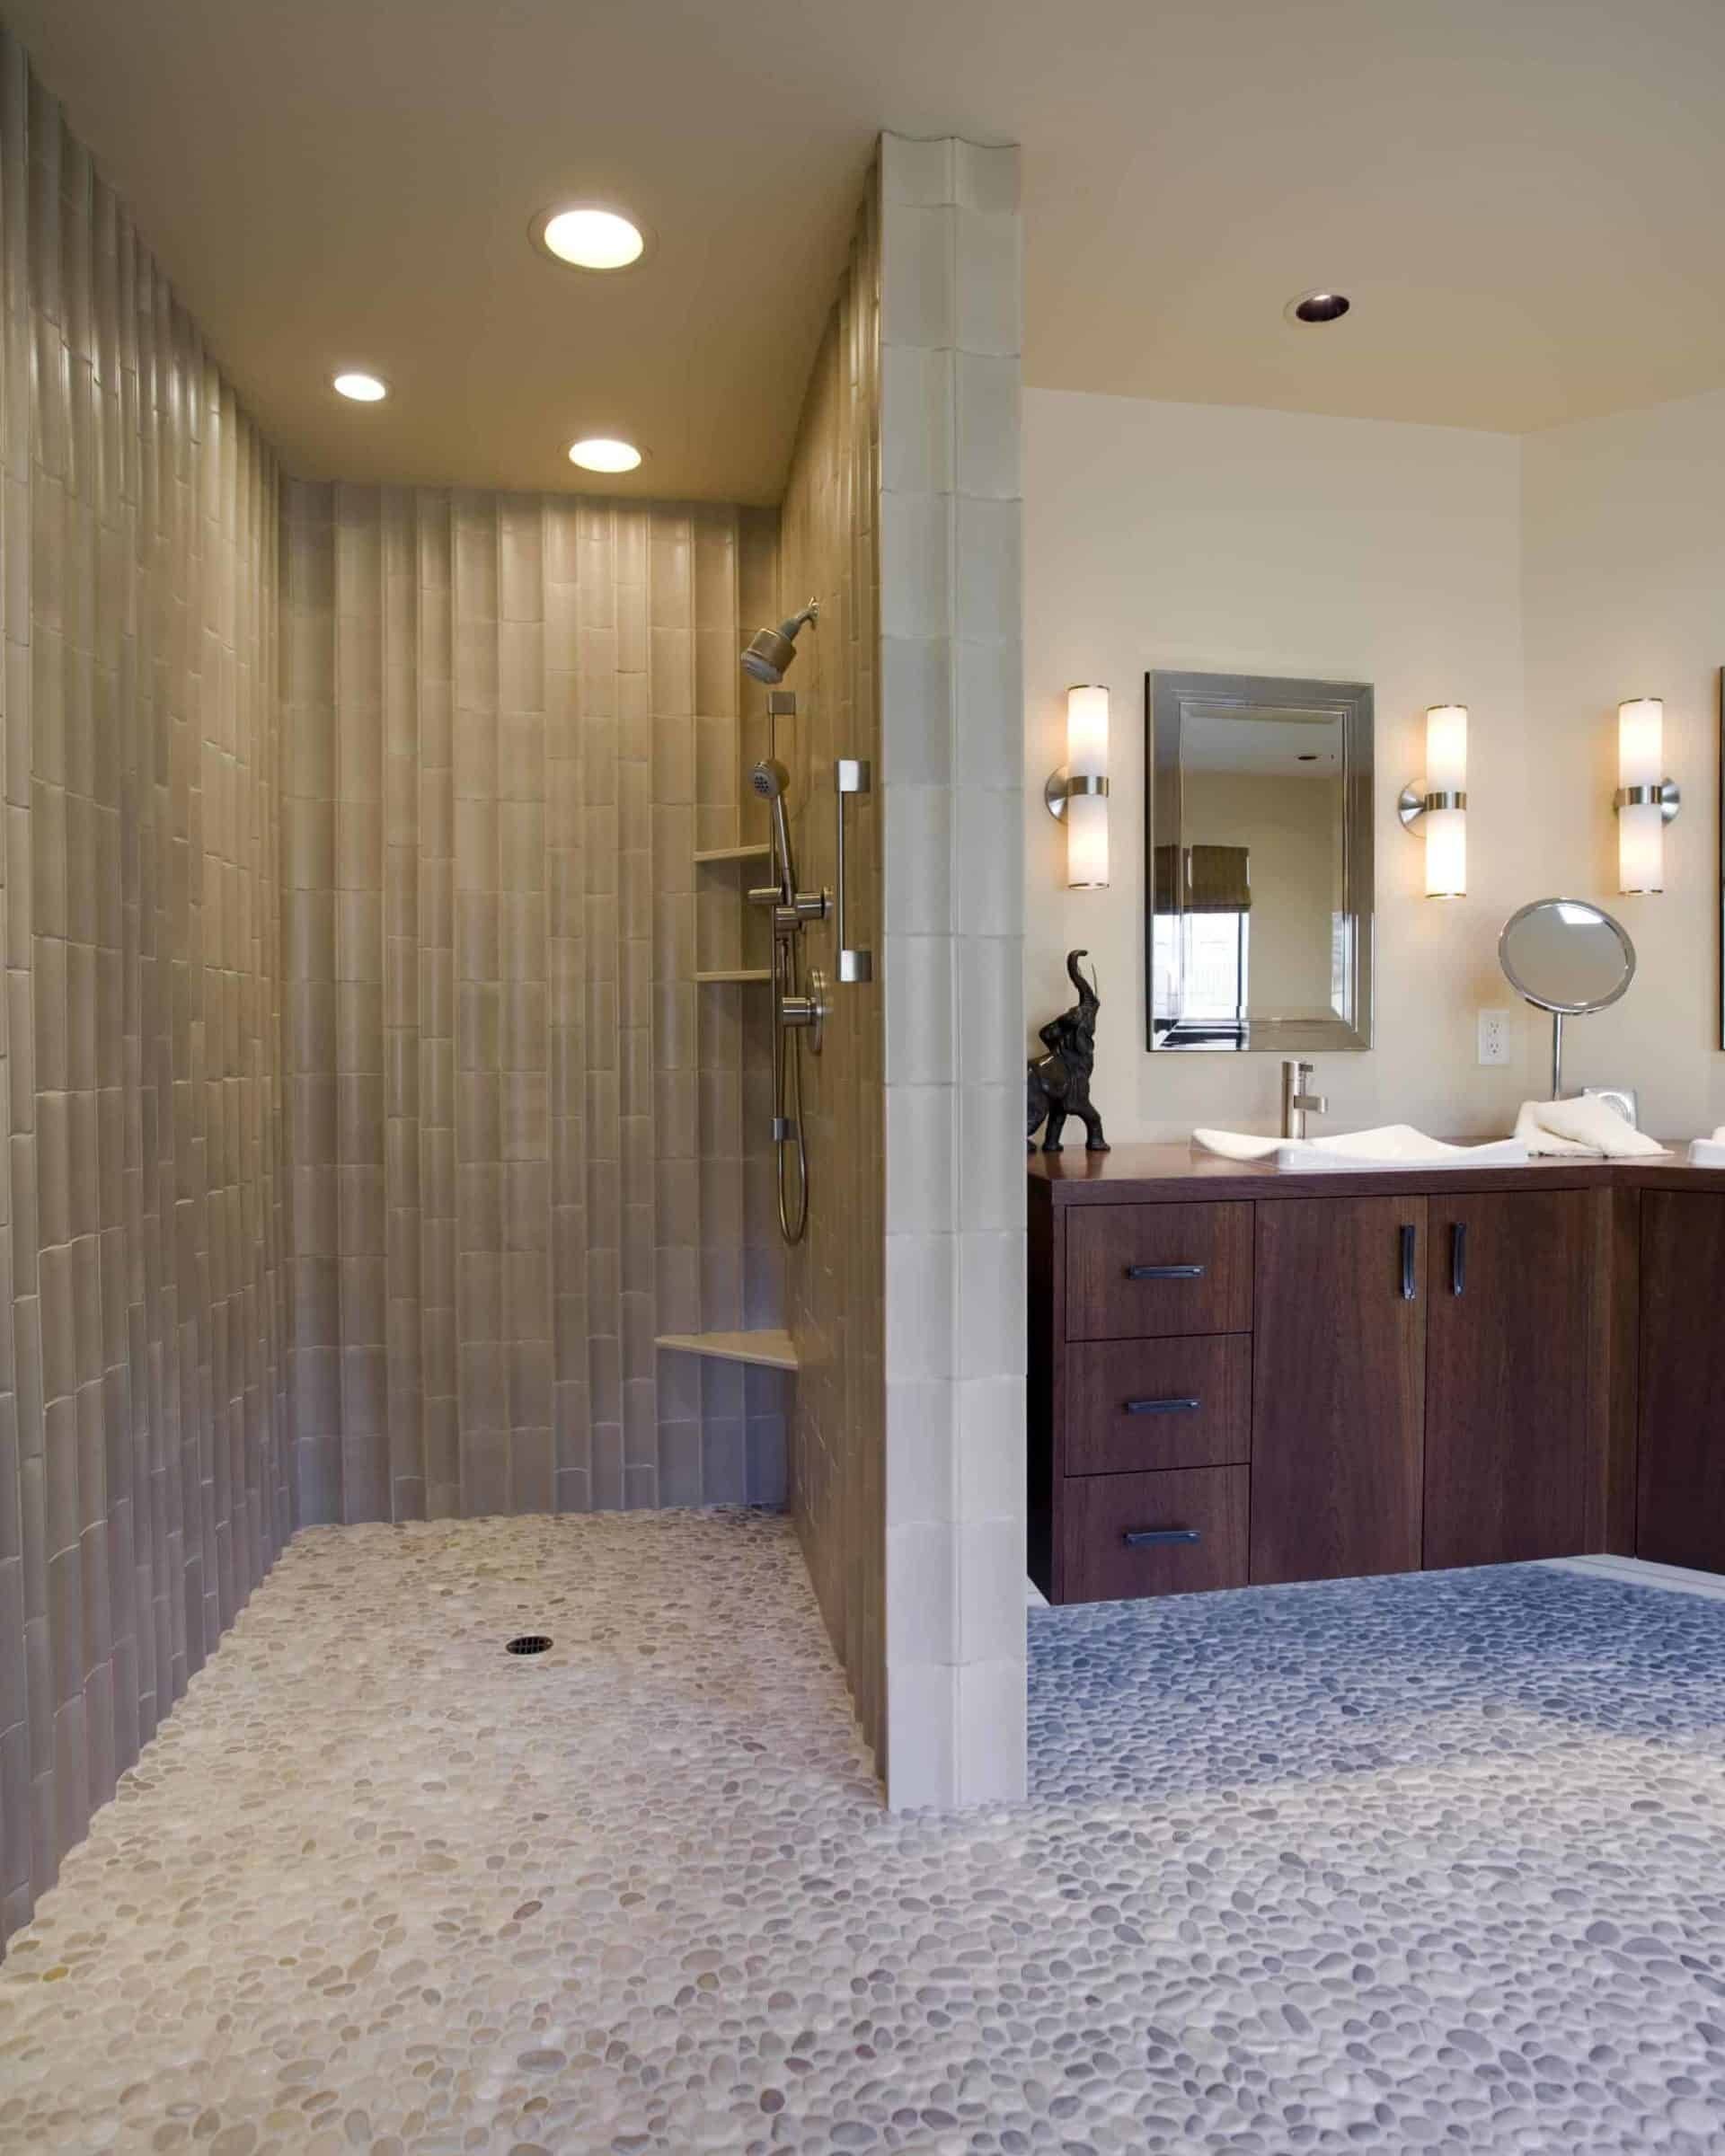 Shower house. Ванная комната с душем. Ванная комната с душем без кабины. Душевые в интерьере. Душевые в частном доме.